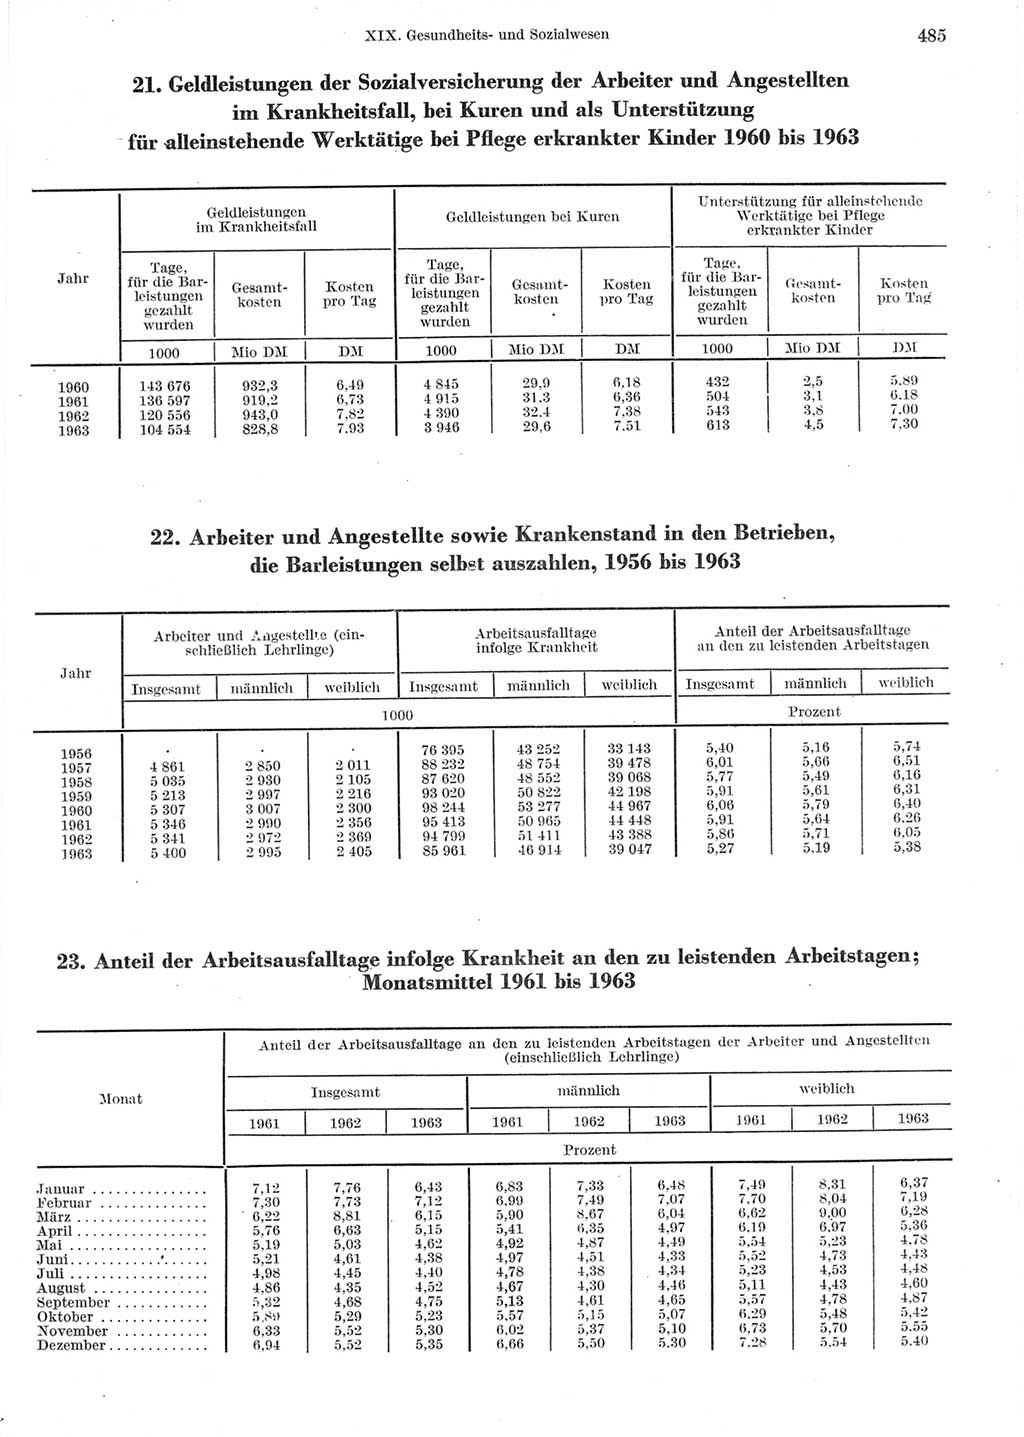 Statistisches Jahrbuch der Deutschen Demokratischen Republik (DDR) 1964, Seite 485 (Stat. Jb. DDR 1964, S. 485)